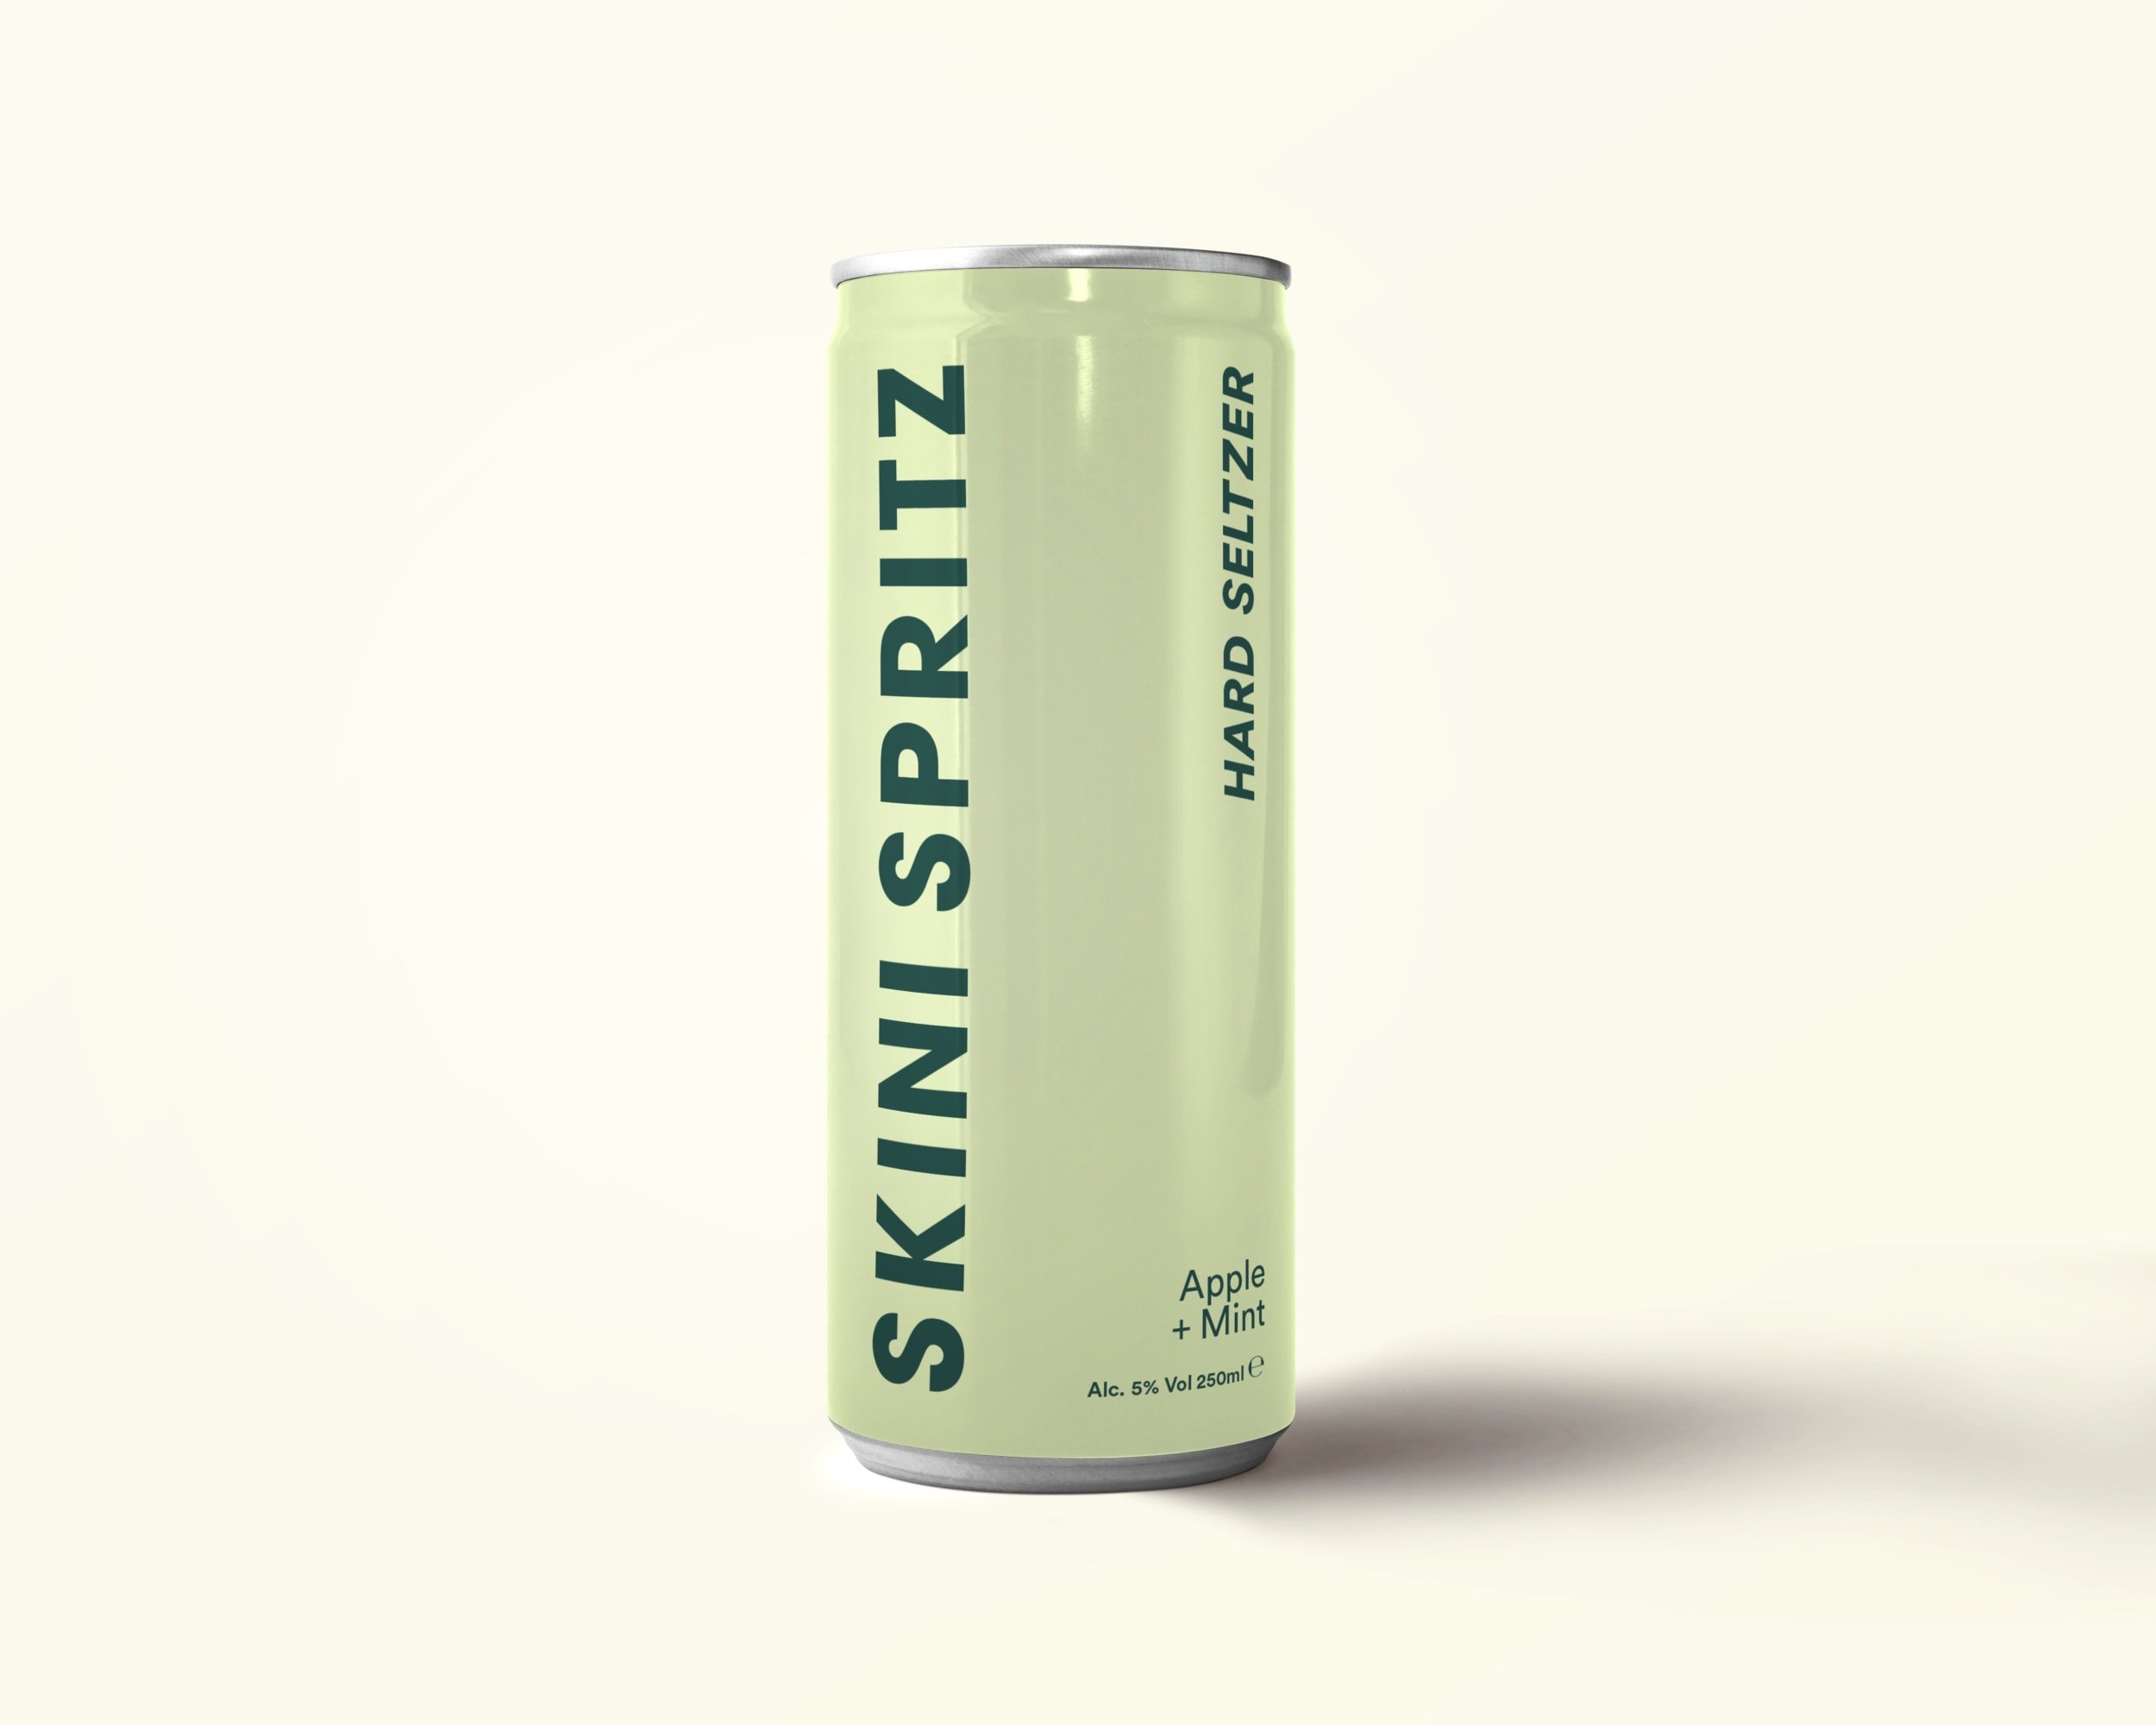 Packaging-designer-packaging design for a hard seltzer drink brand 